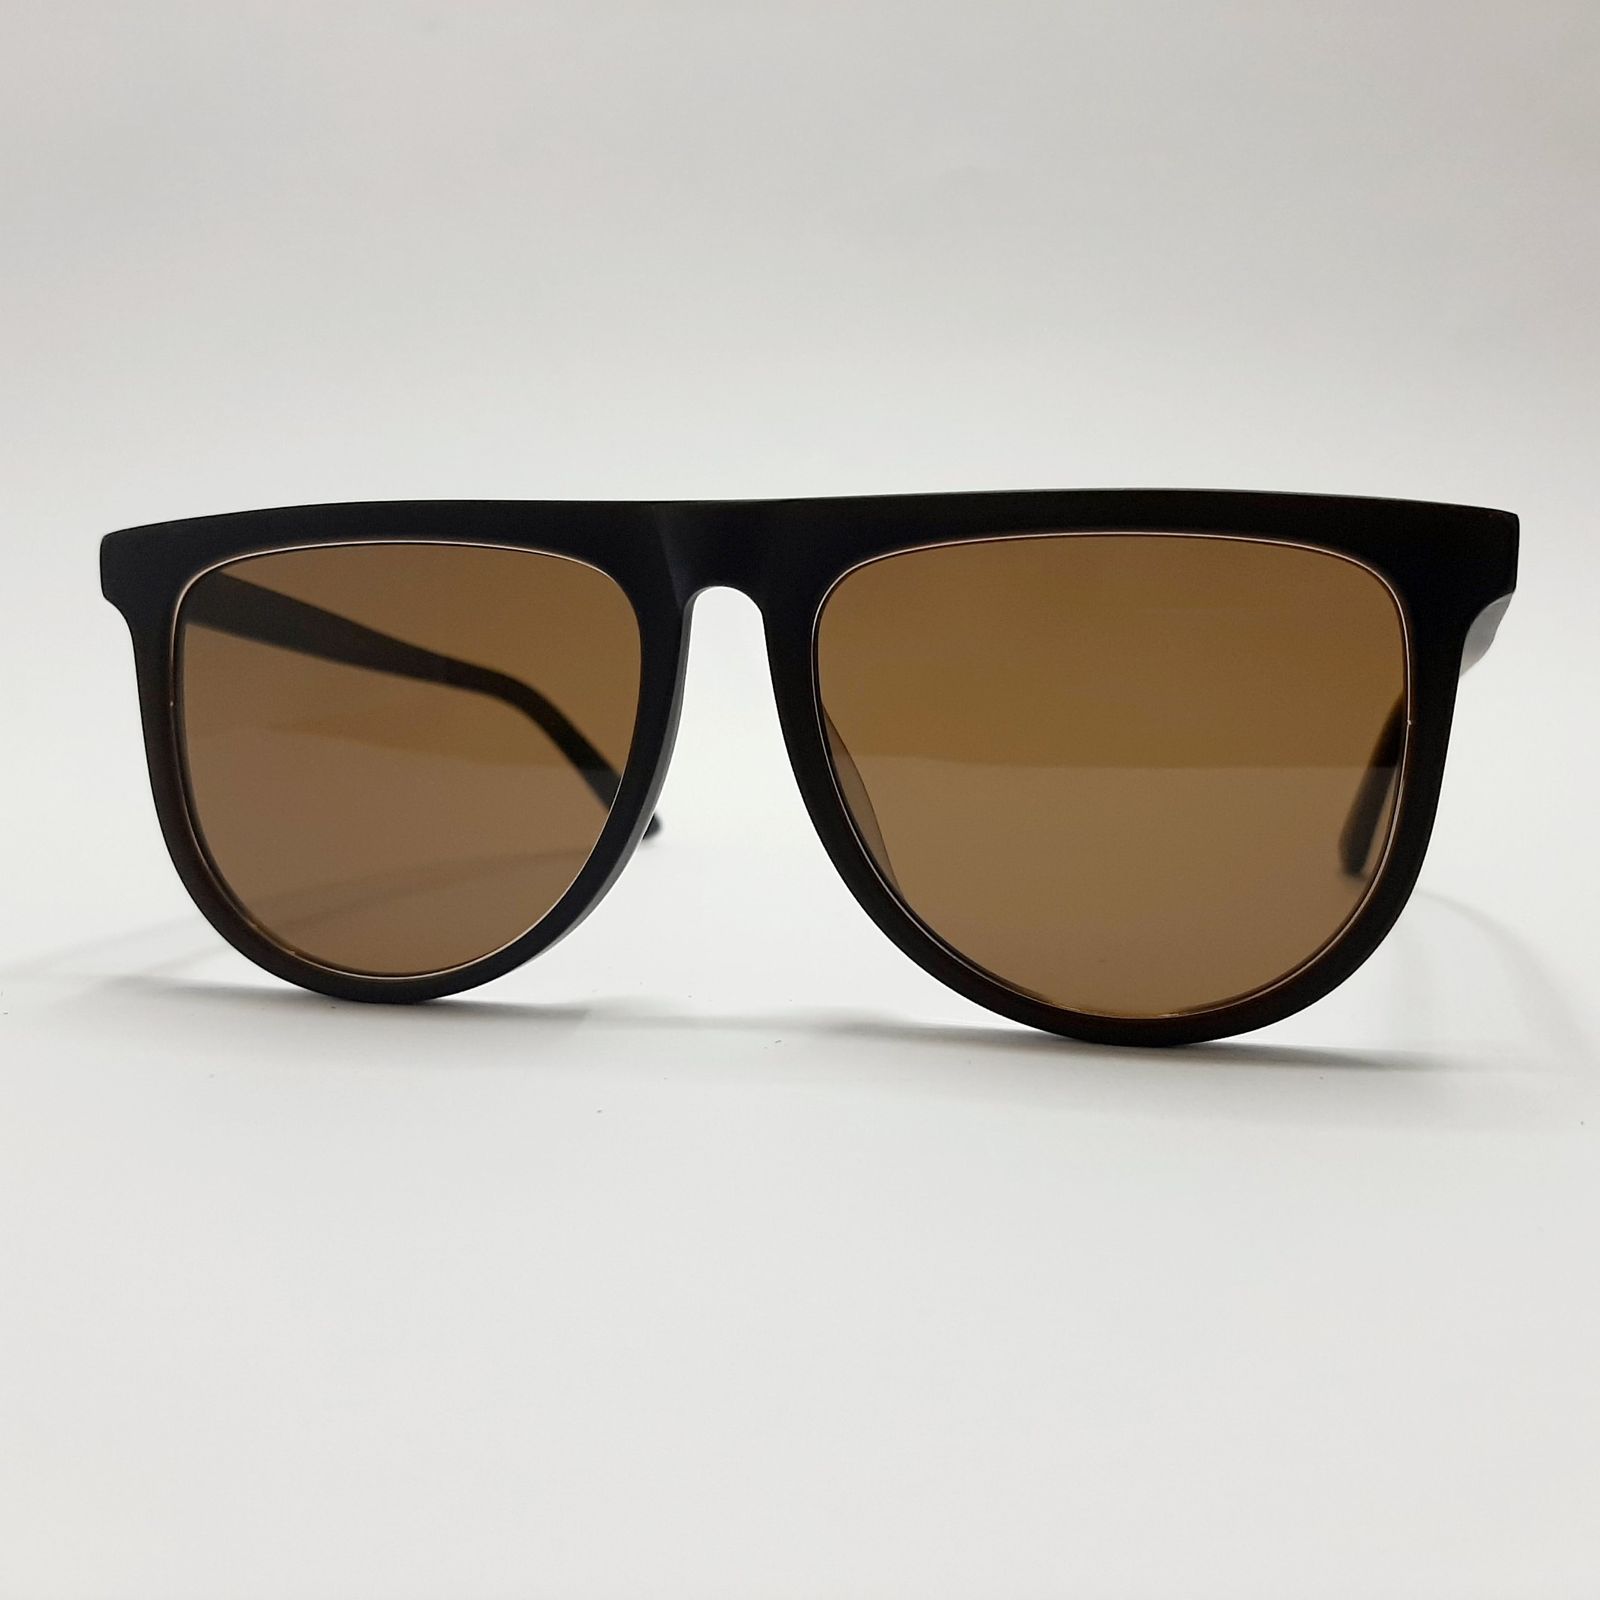 عینک آفتابی گوچی مدل GG1070c5 -  - 3